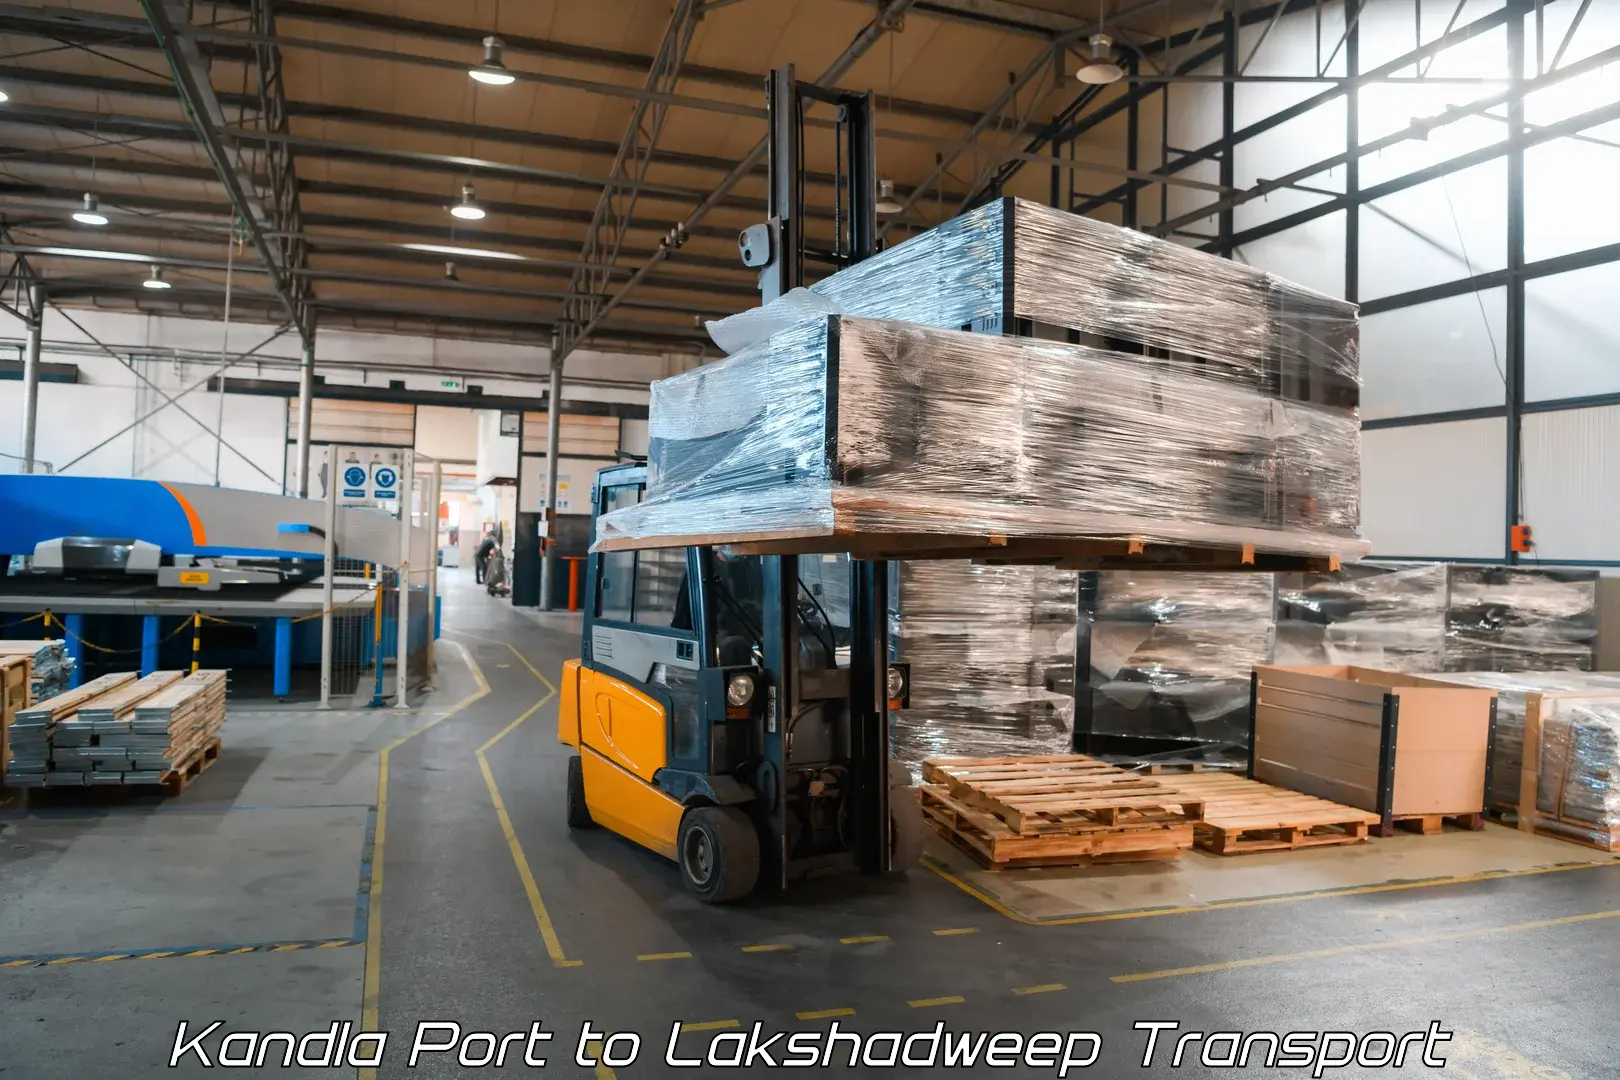 Cargo transportation services Kandla Port to Lakshadweep